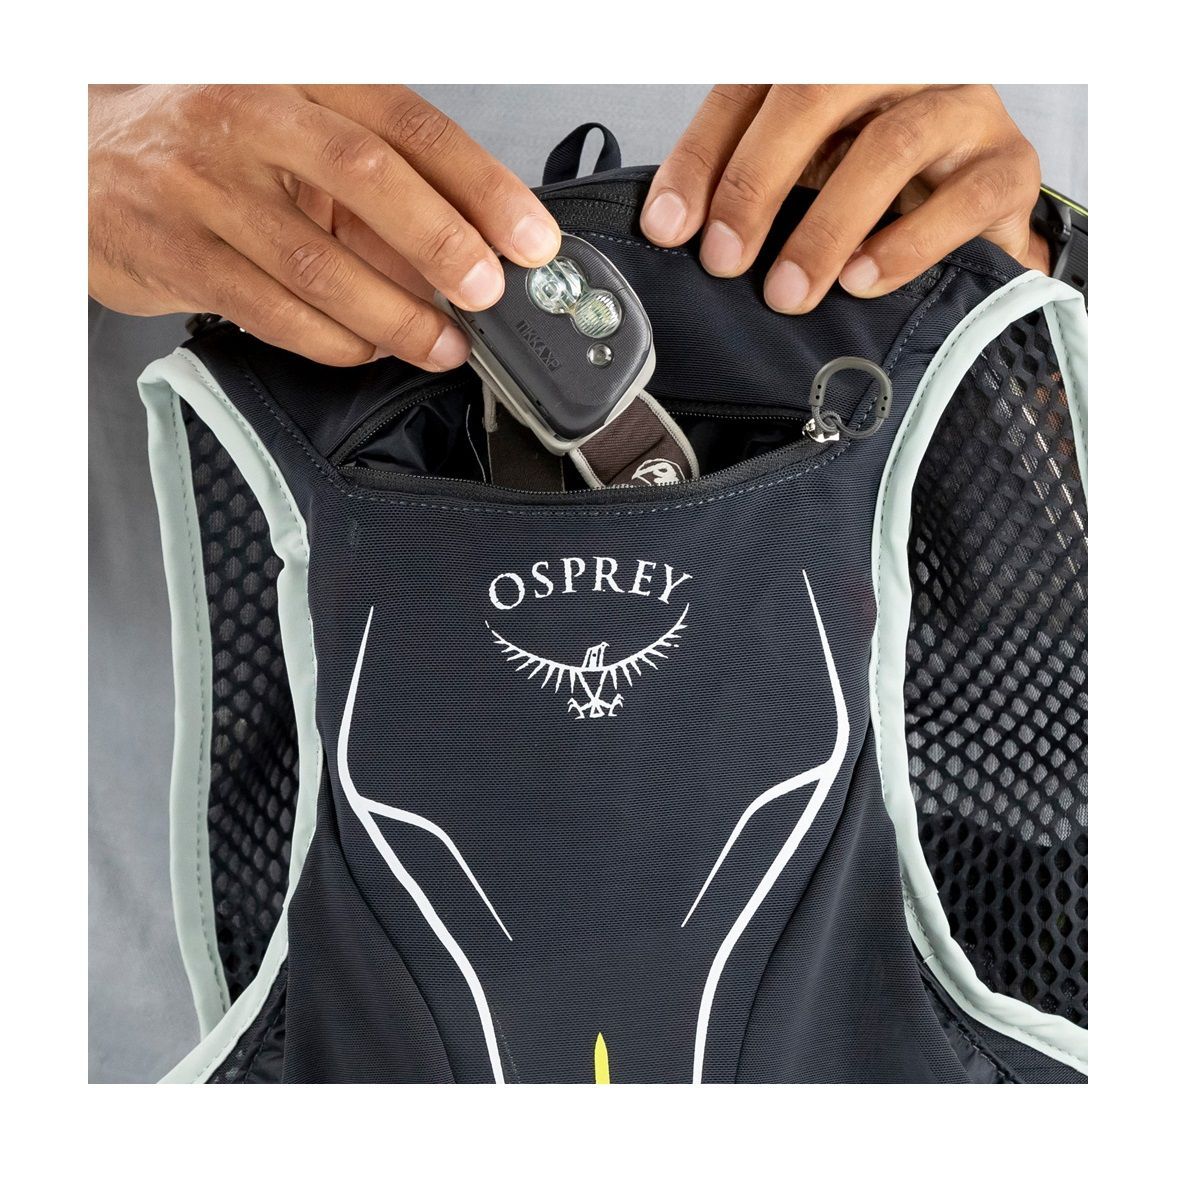 Osprey Duro 1.5 con Bolsa de Hidratación de 1.5 L